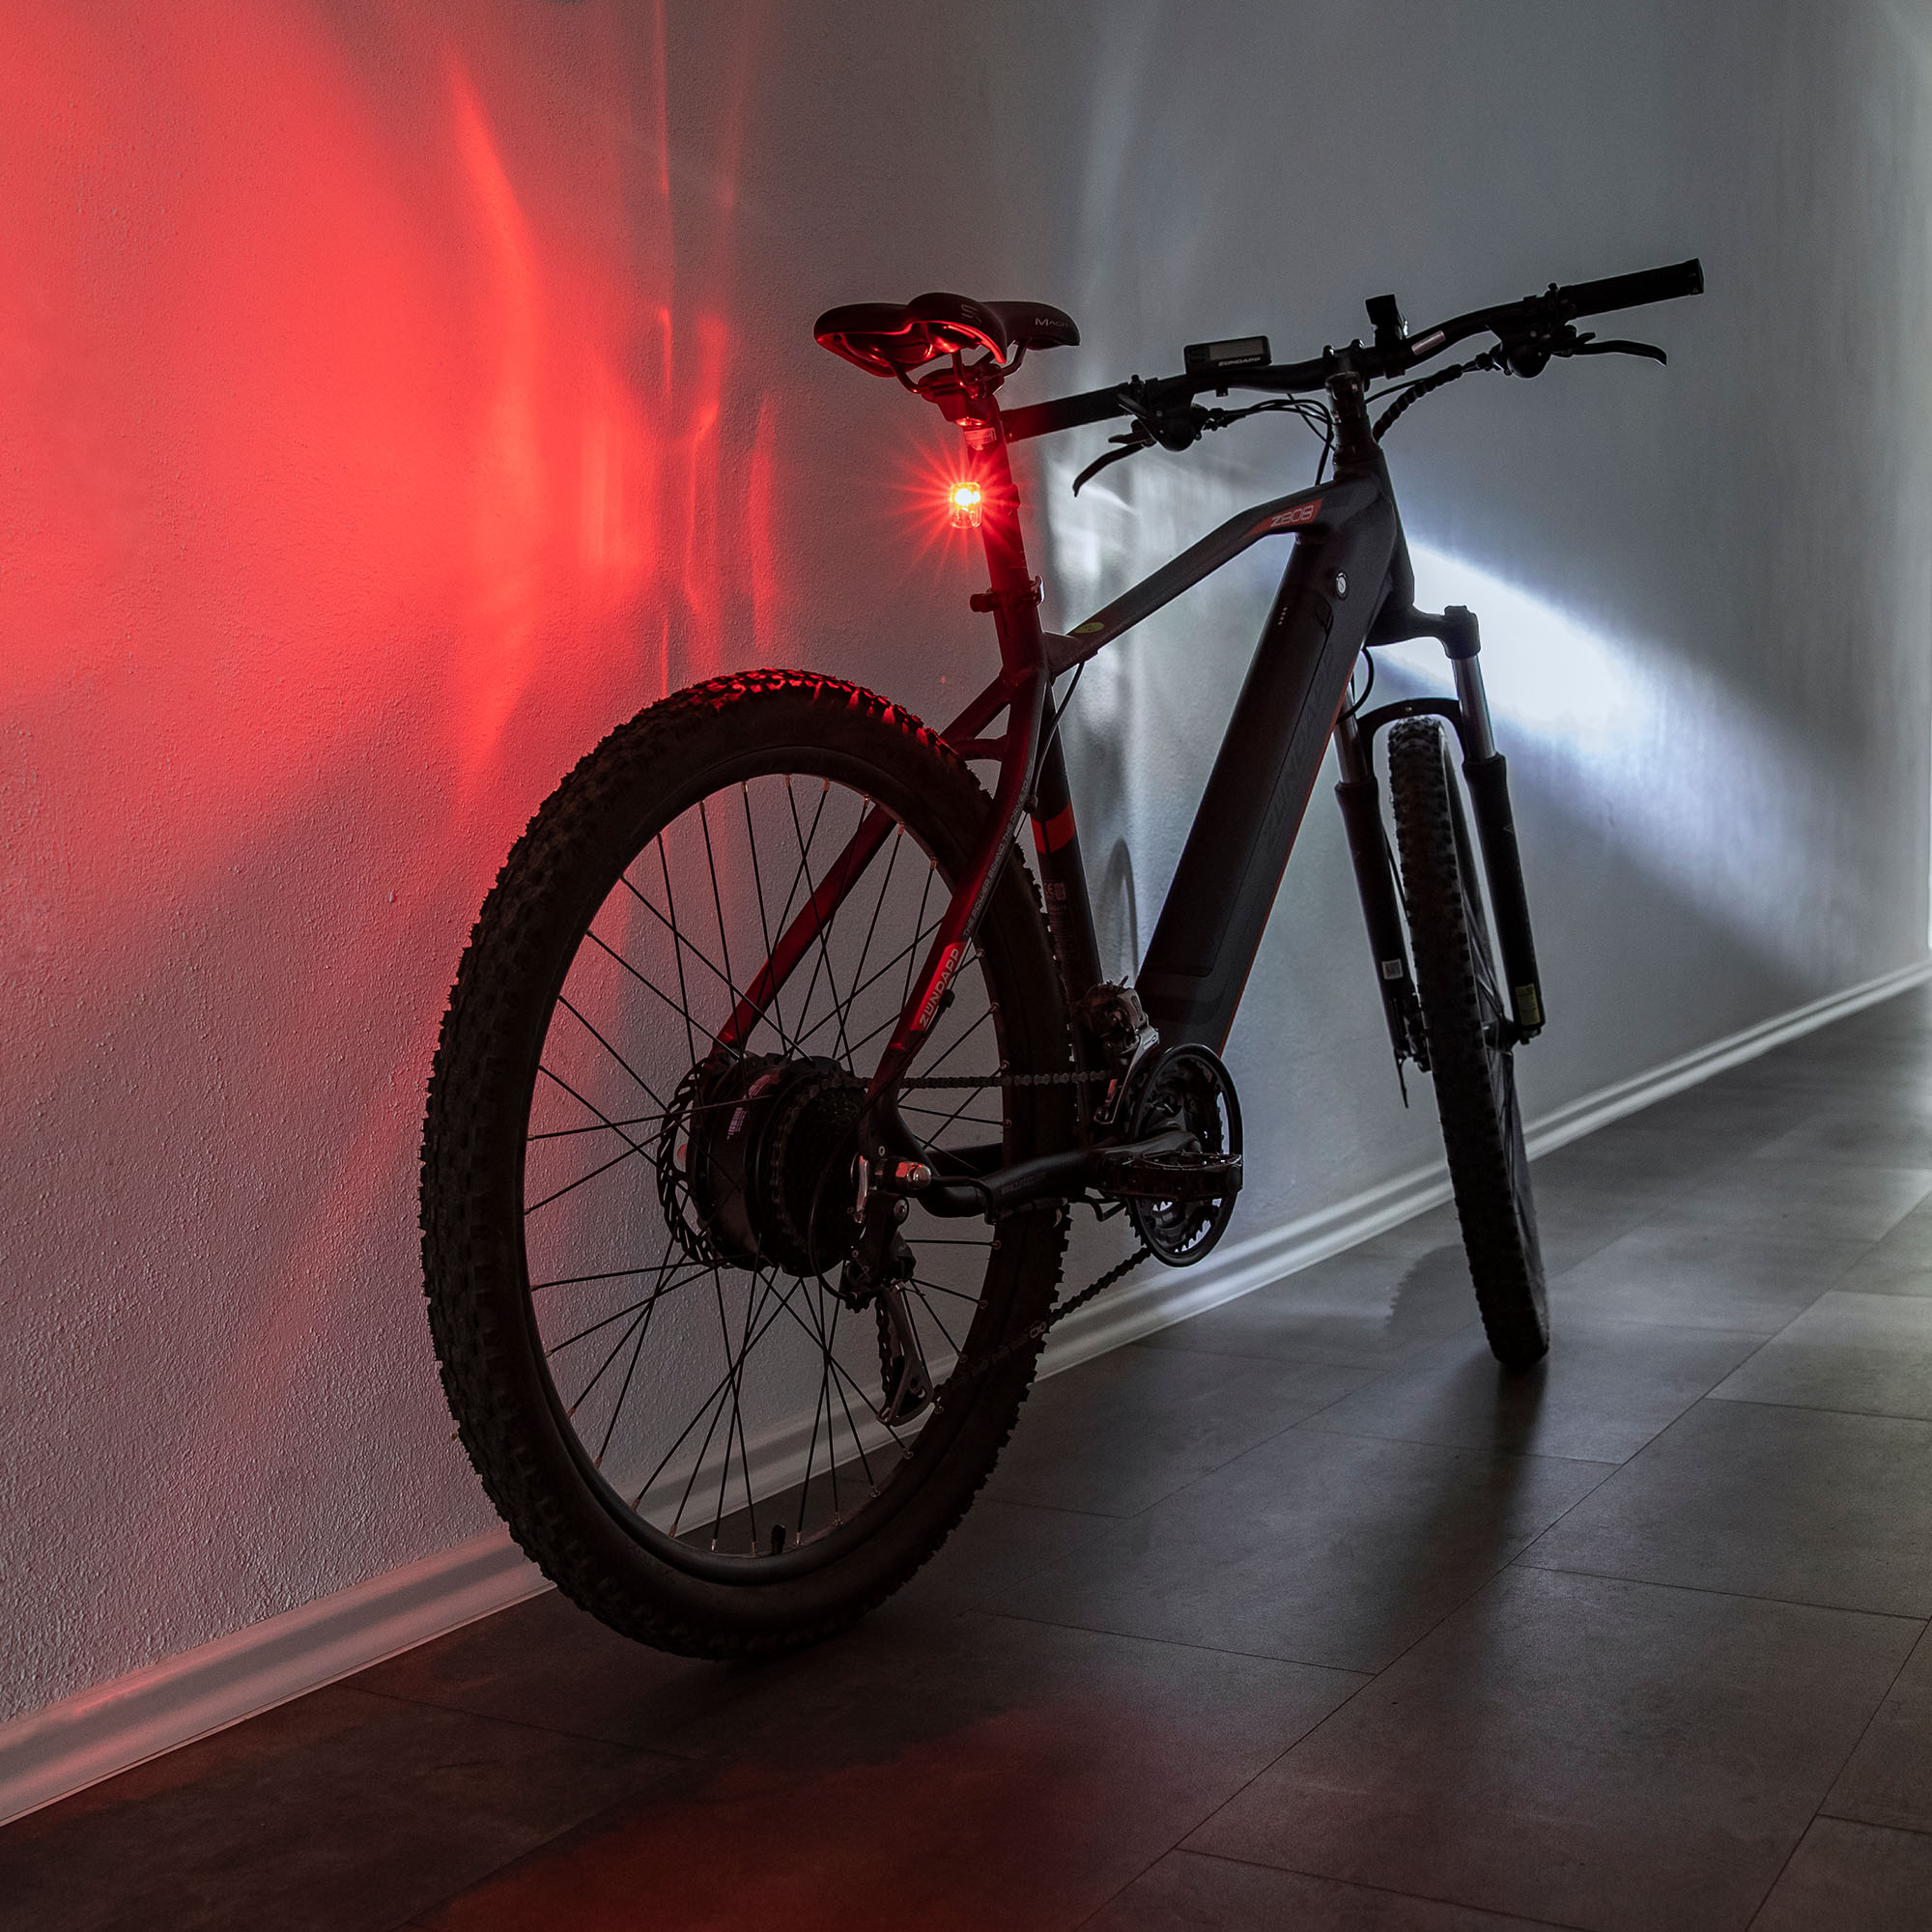 2-Reifen-Pack Fahrrad Rad Lichter - Wasserdichte Led Fahrrad